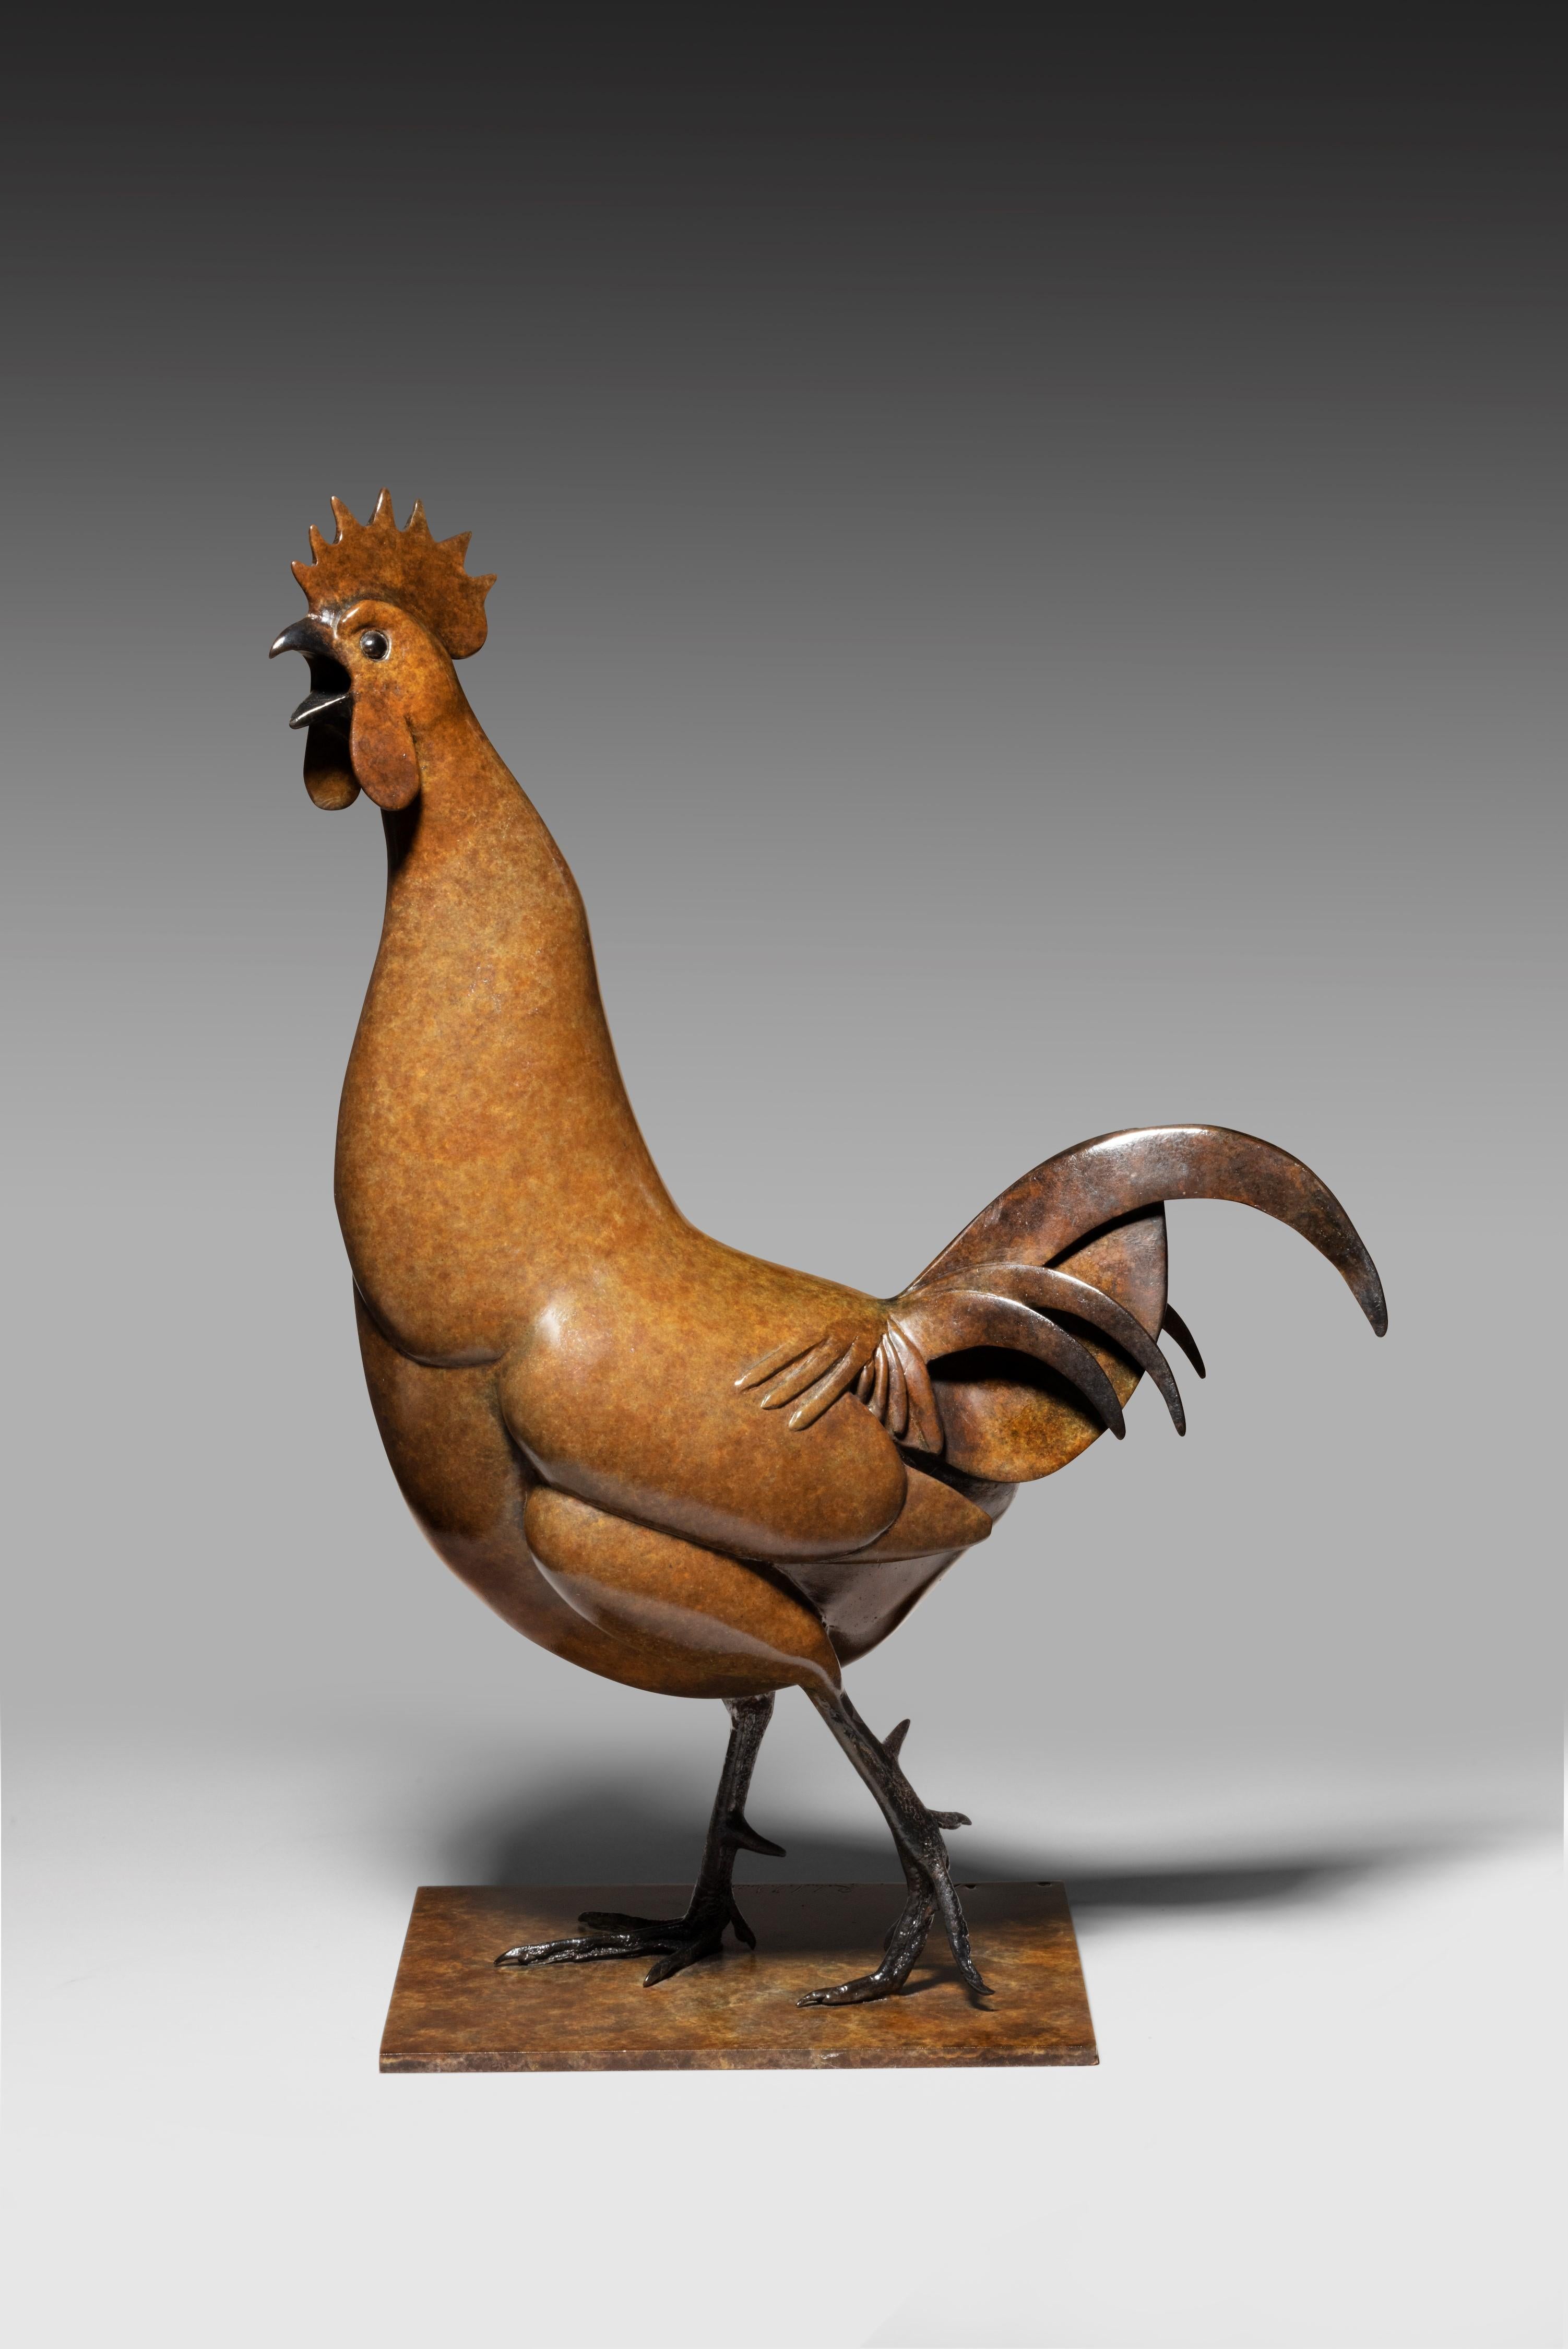 Richard Smith Figurative Sculpture – Cockerel' Bronzetierskulptur eines Brown Cockerel. Skulptur für Wildtiere auf dem Bauernhof